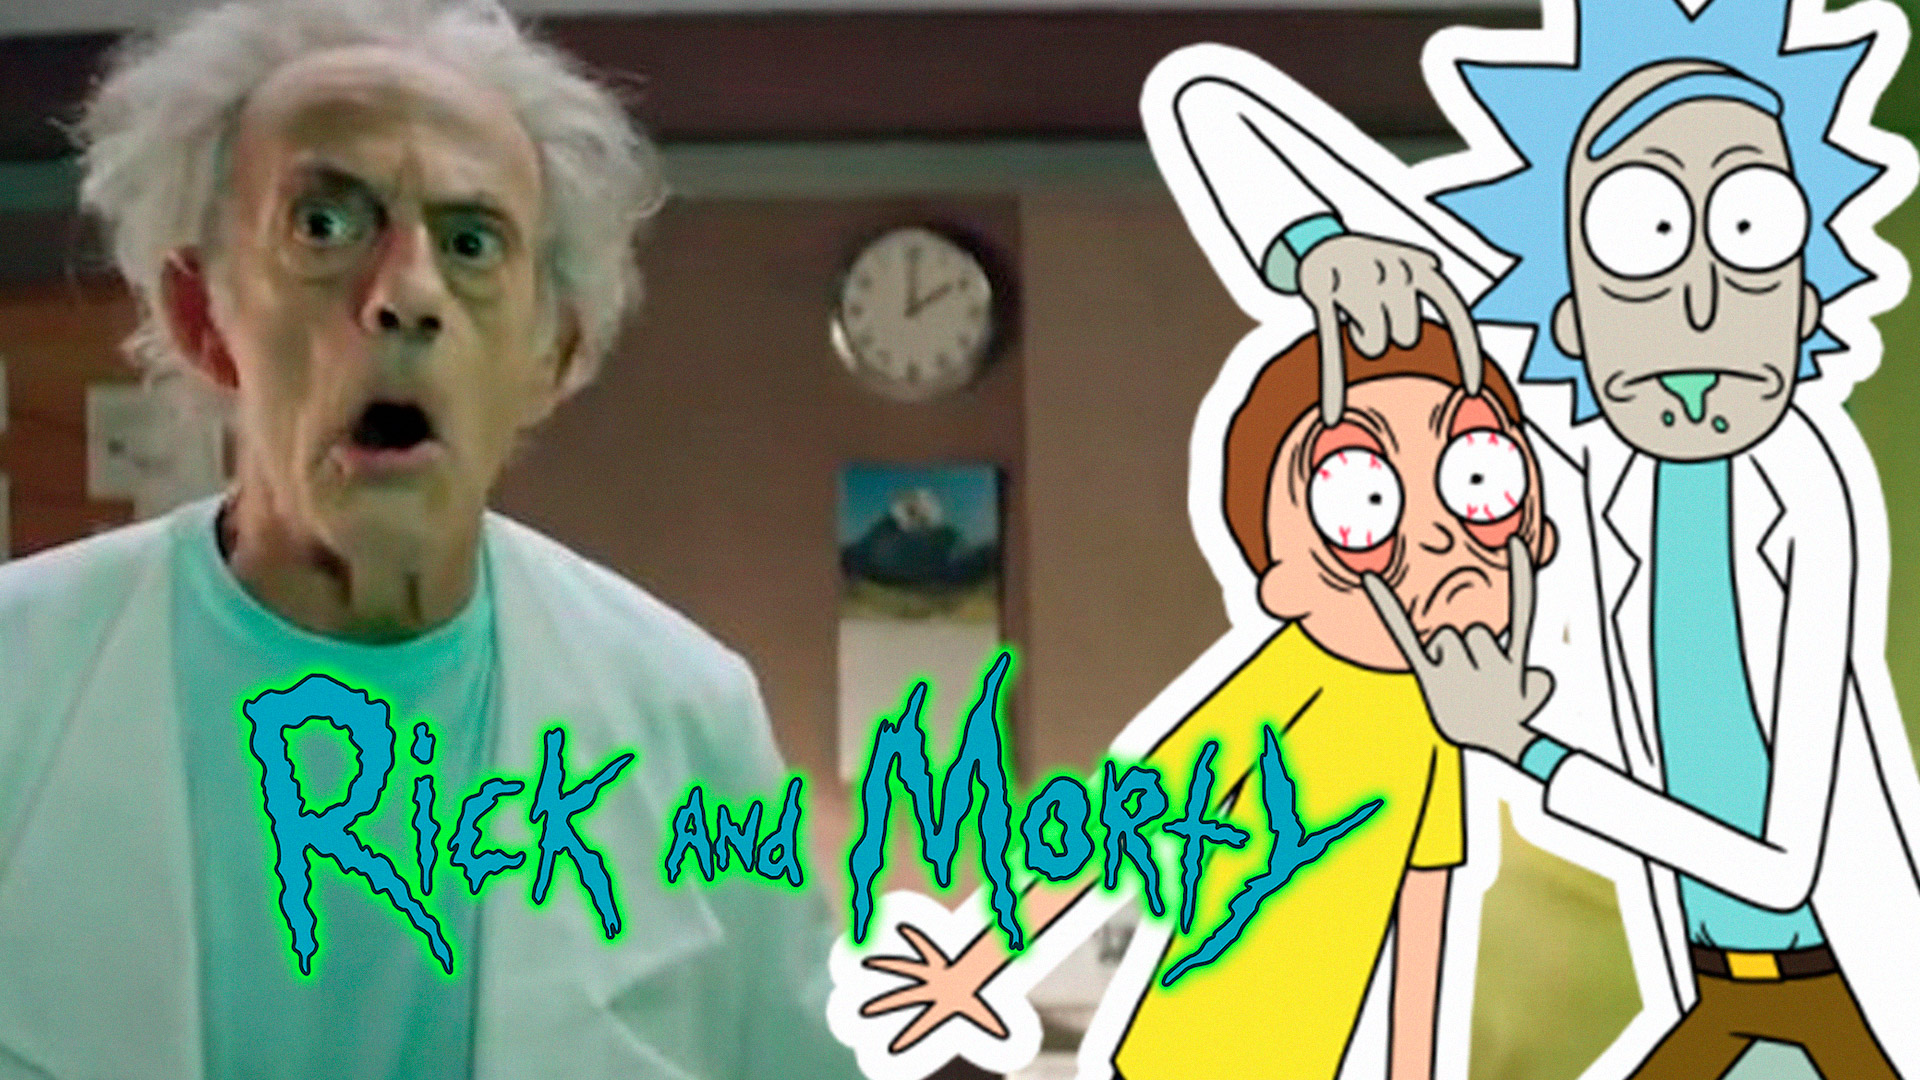 No Instagram da [Adult Swim], foram postados 3 vídeos de Rick and Morty na sua versão Live Action, quem trazem o Doutor como Rick.